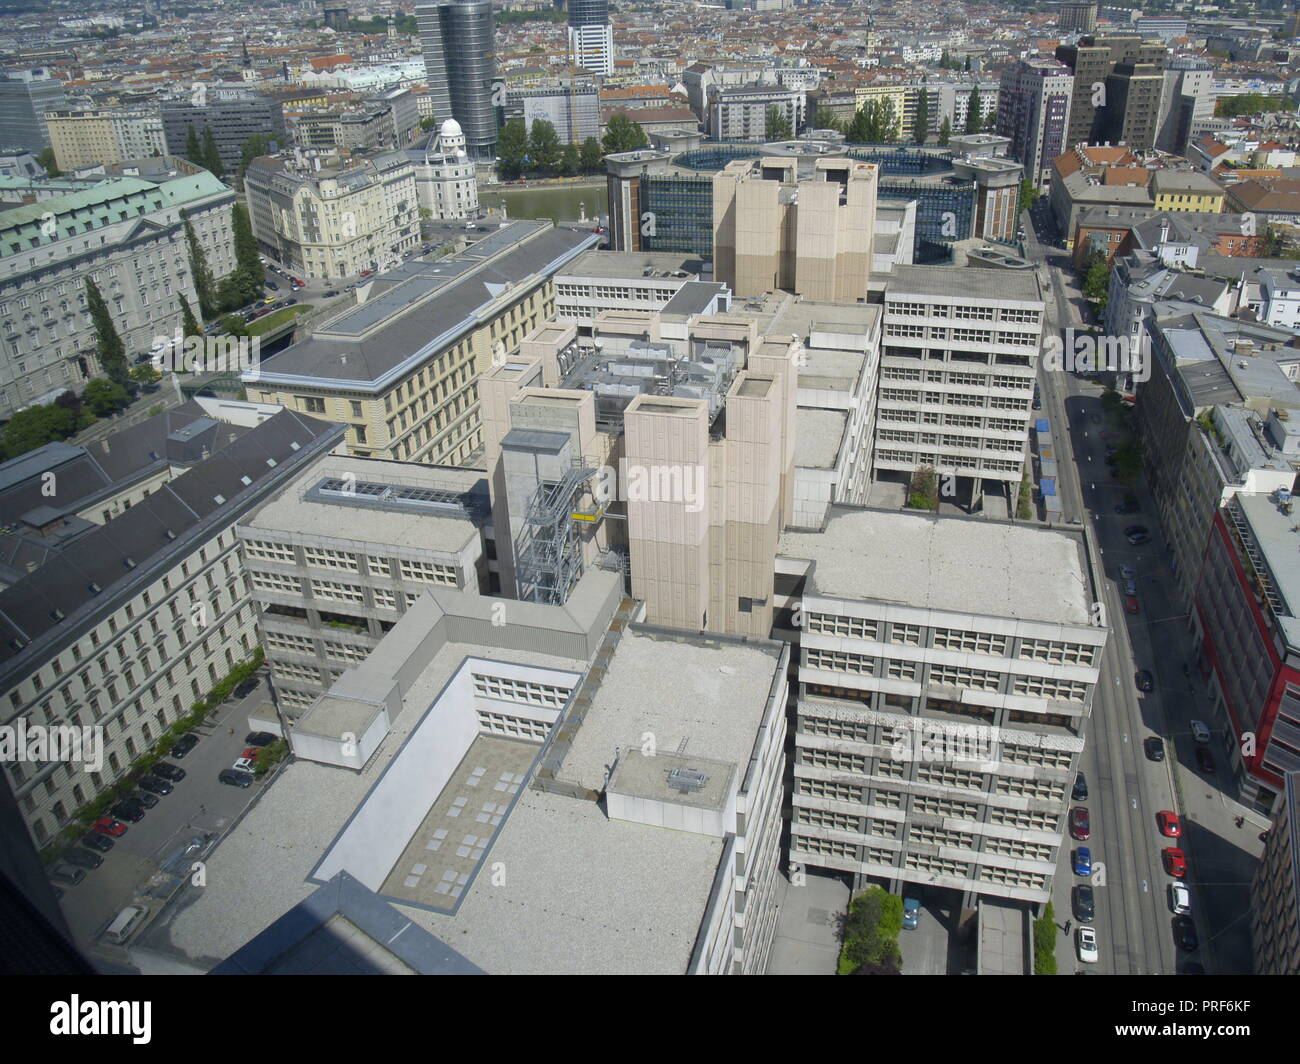 Wien, Baustelle Finanzamt 1030 - Wien, Baustelle Stockfotografie - Alamy